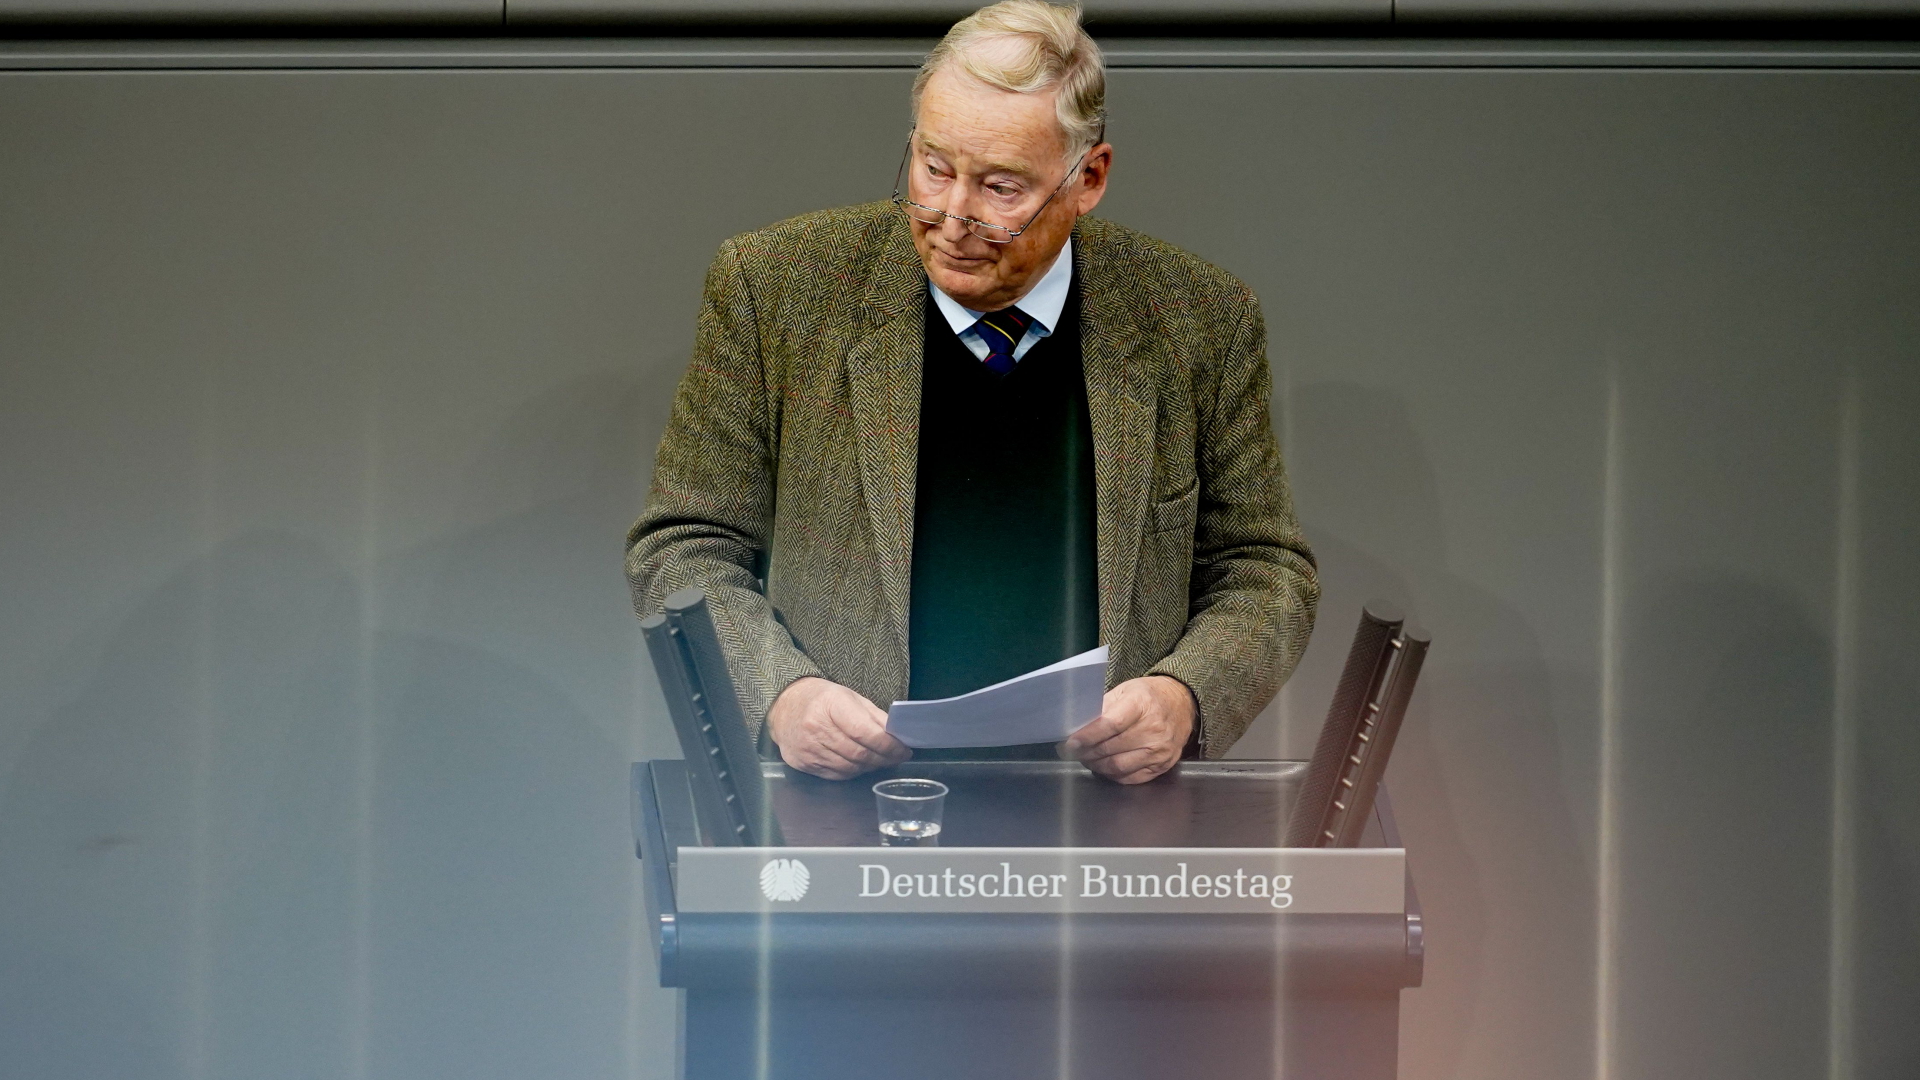 Alexander Gauland spricht im Bundestag | Bildquelle: FILIP SINGER/EPA-EFE/Shutterstoc